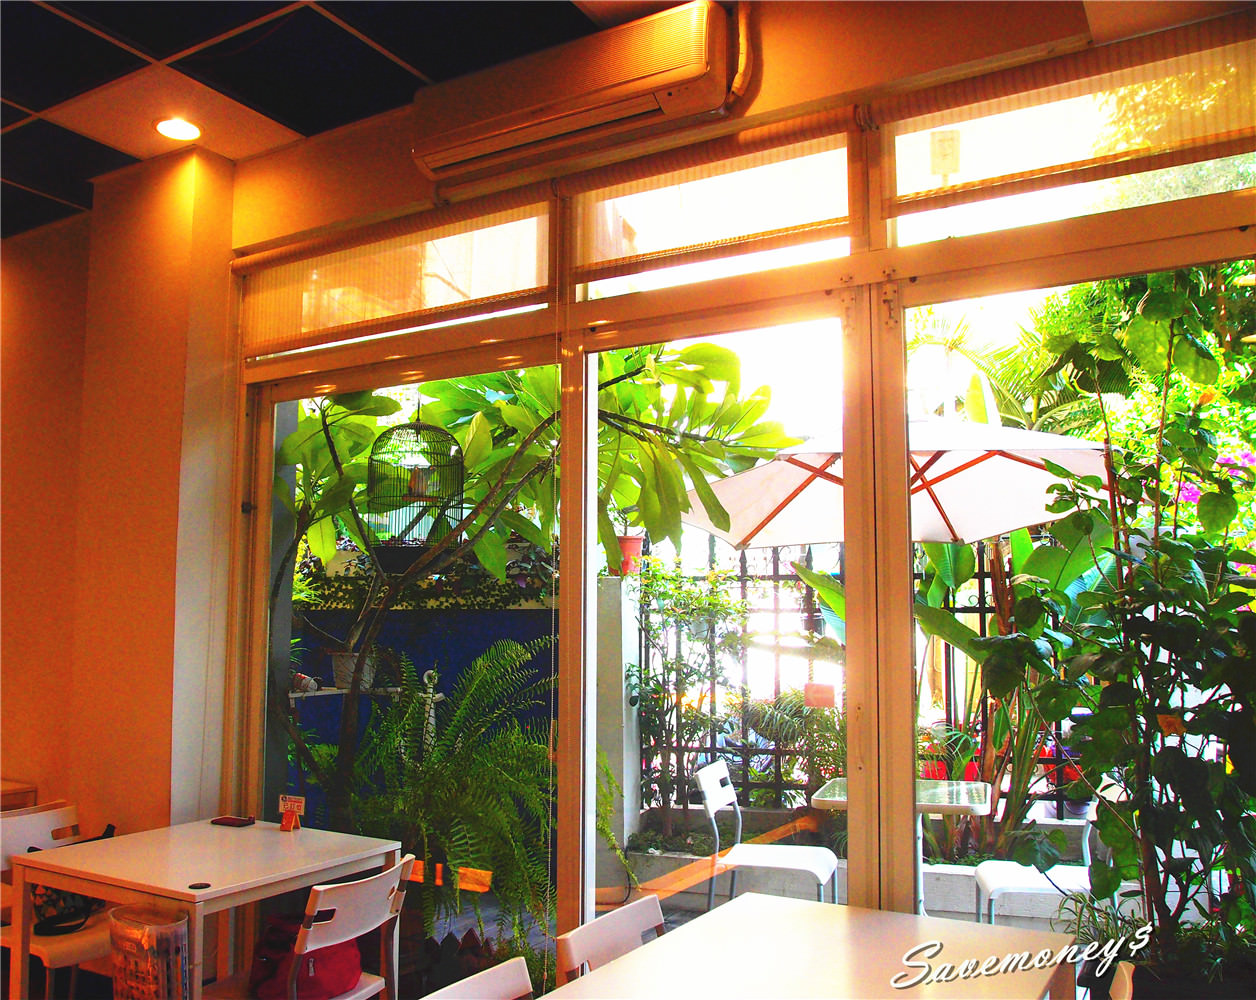 【台中早午餐】50米深嵐博館店~坐擁滿室的晨光與綠意,拍照打卡好地點